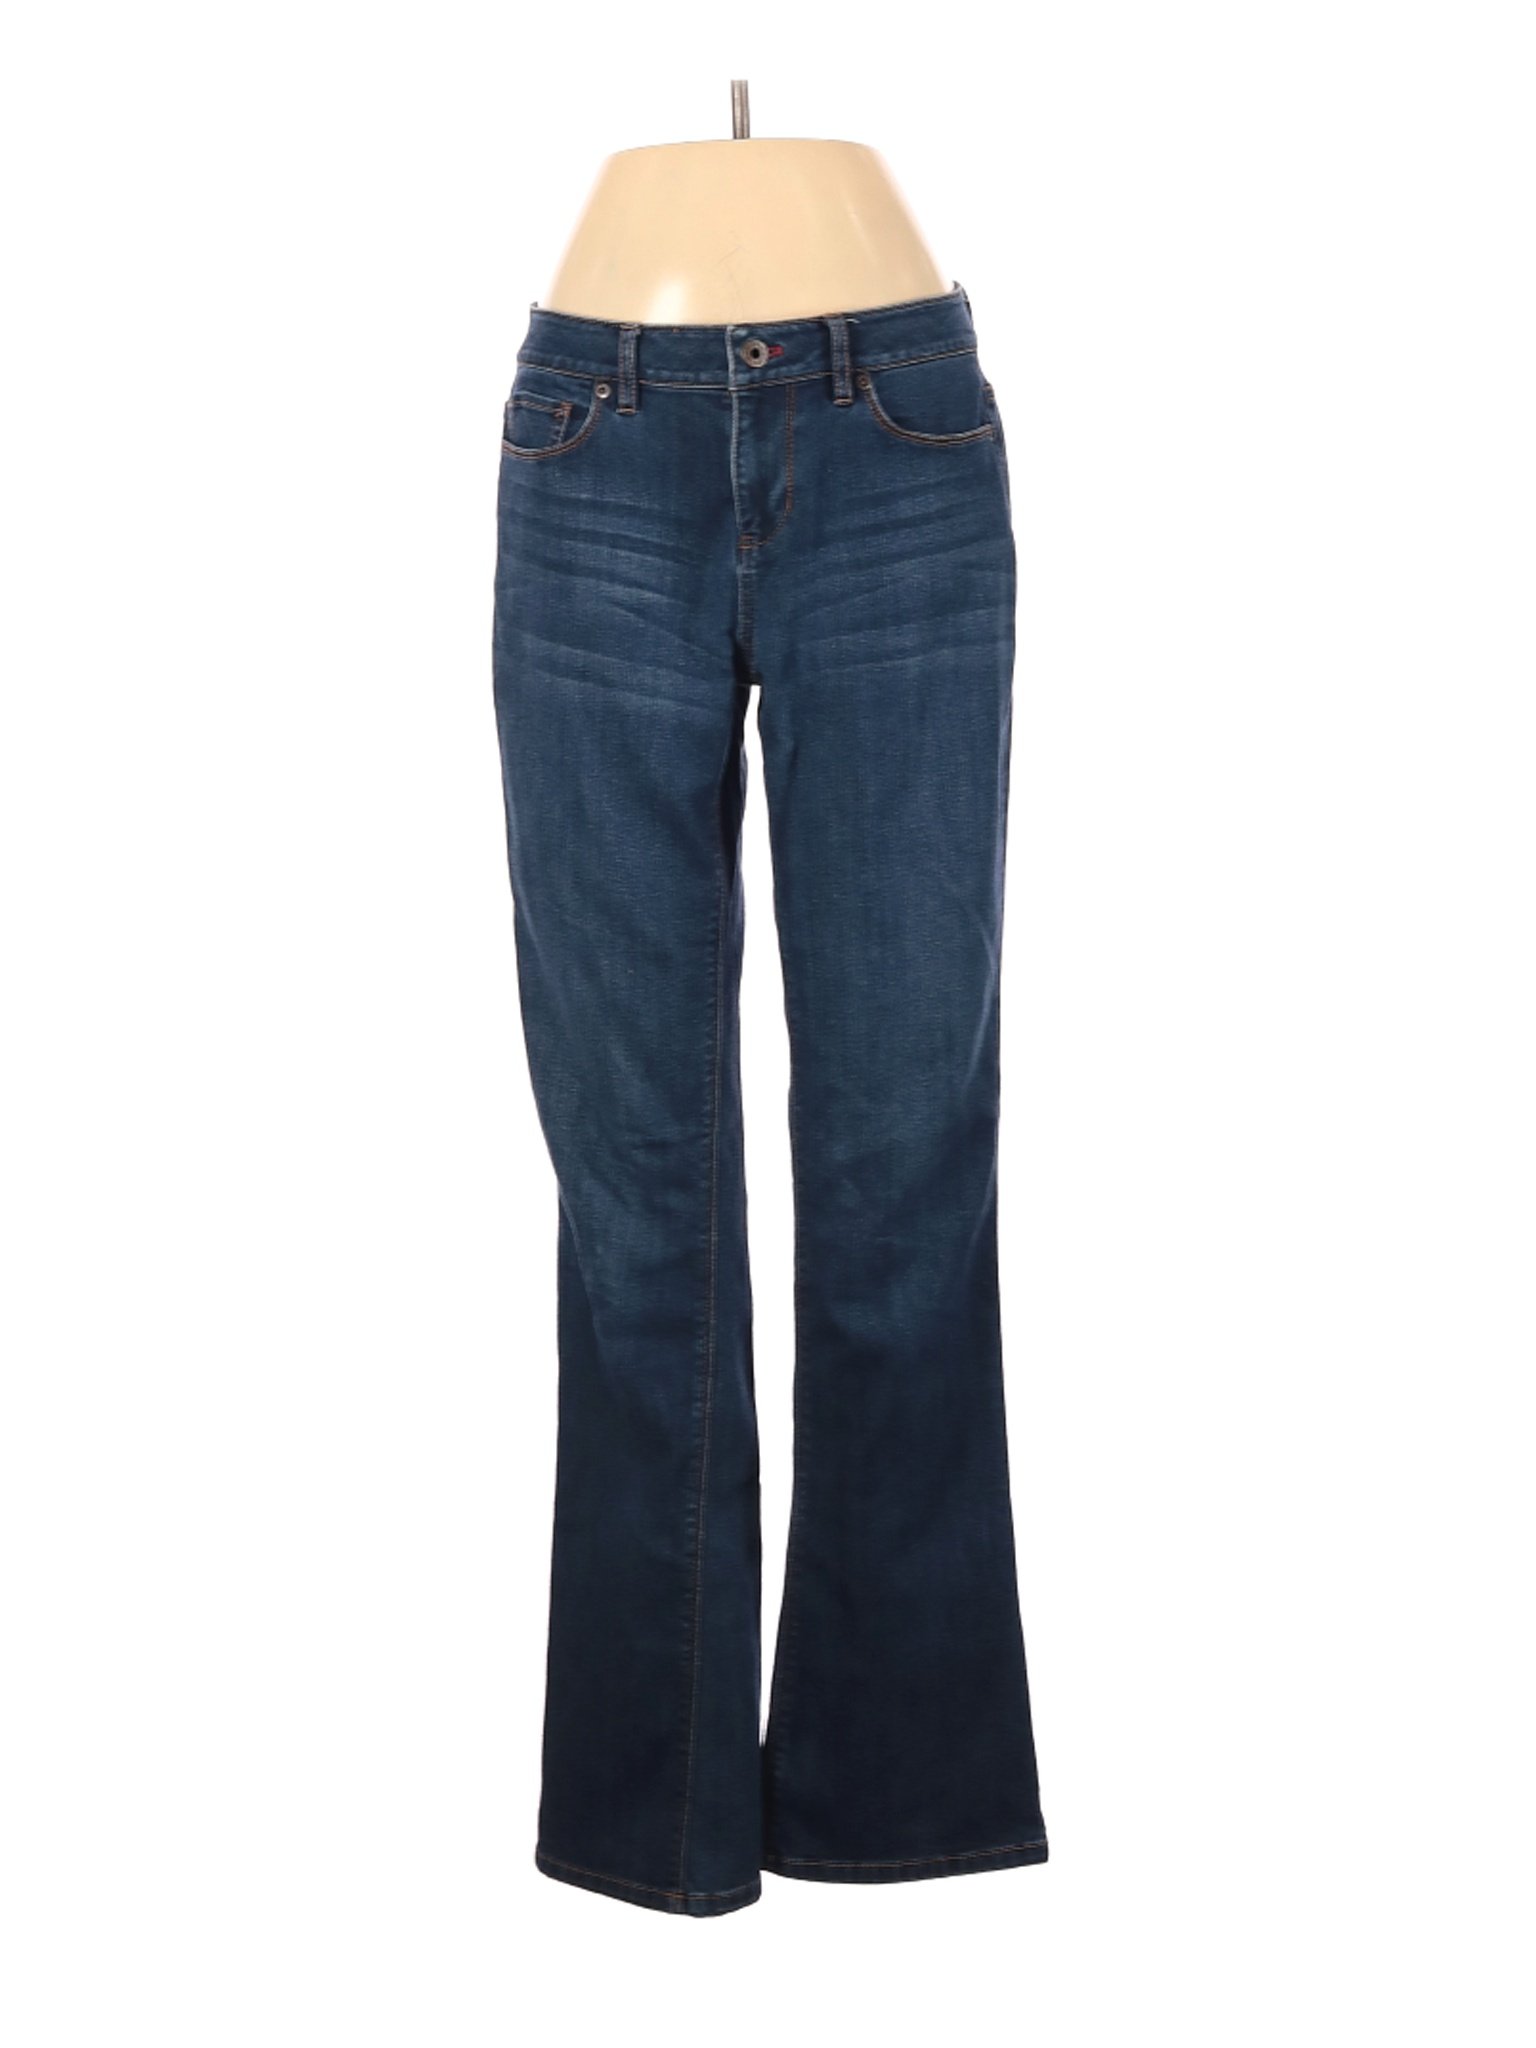 J.Jill Women Blue Jeans 4 | eBay